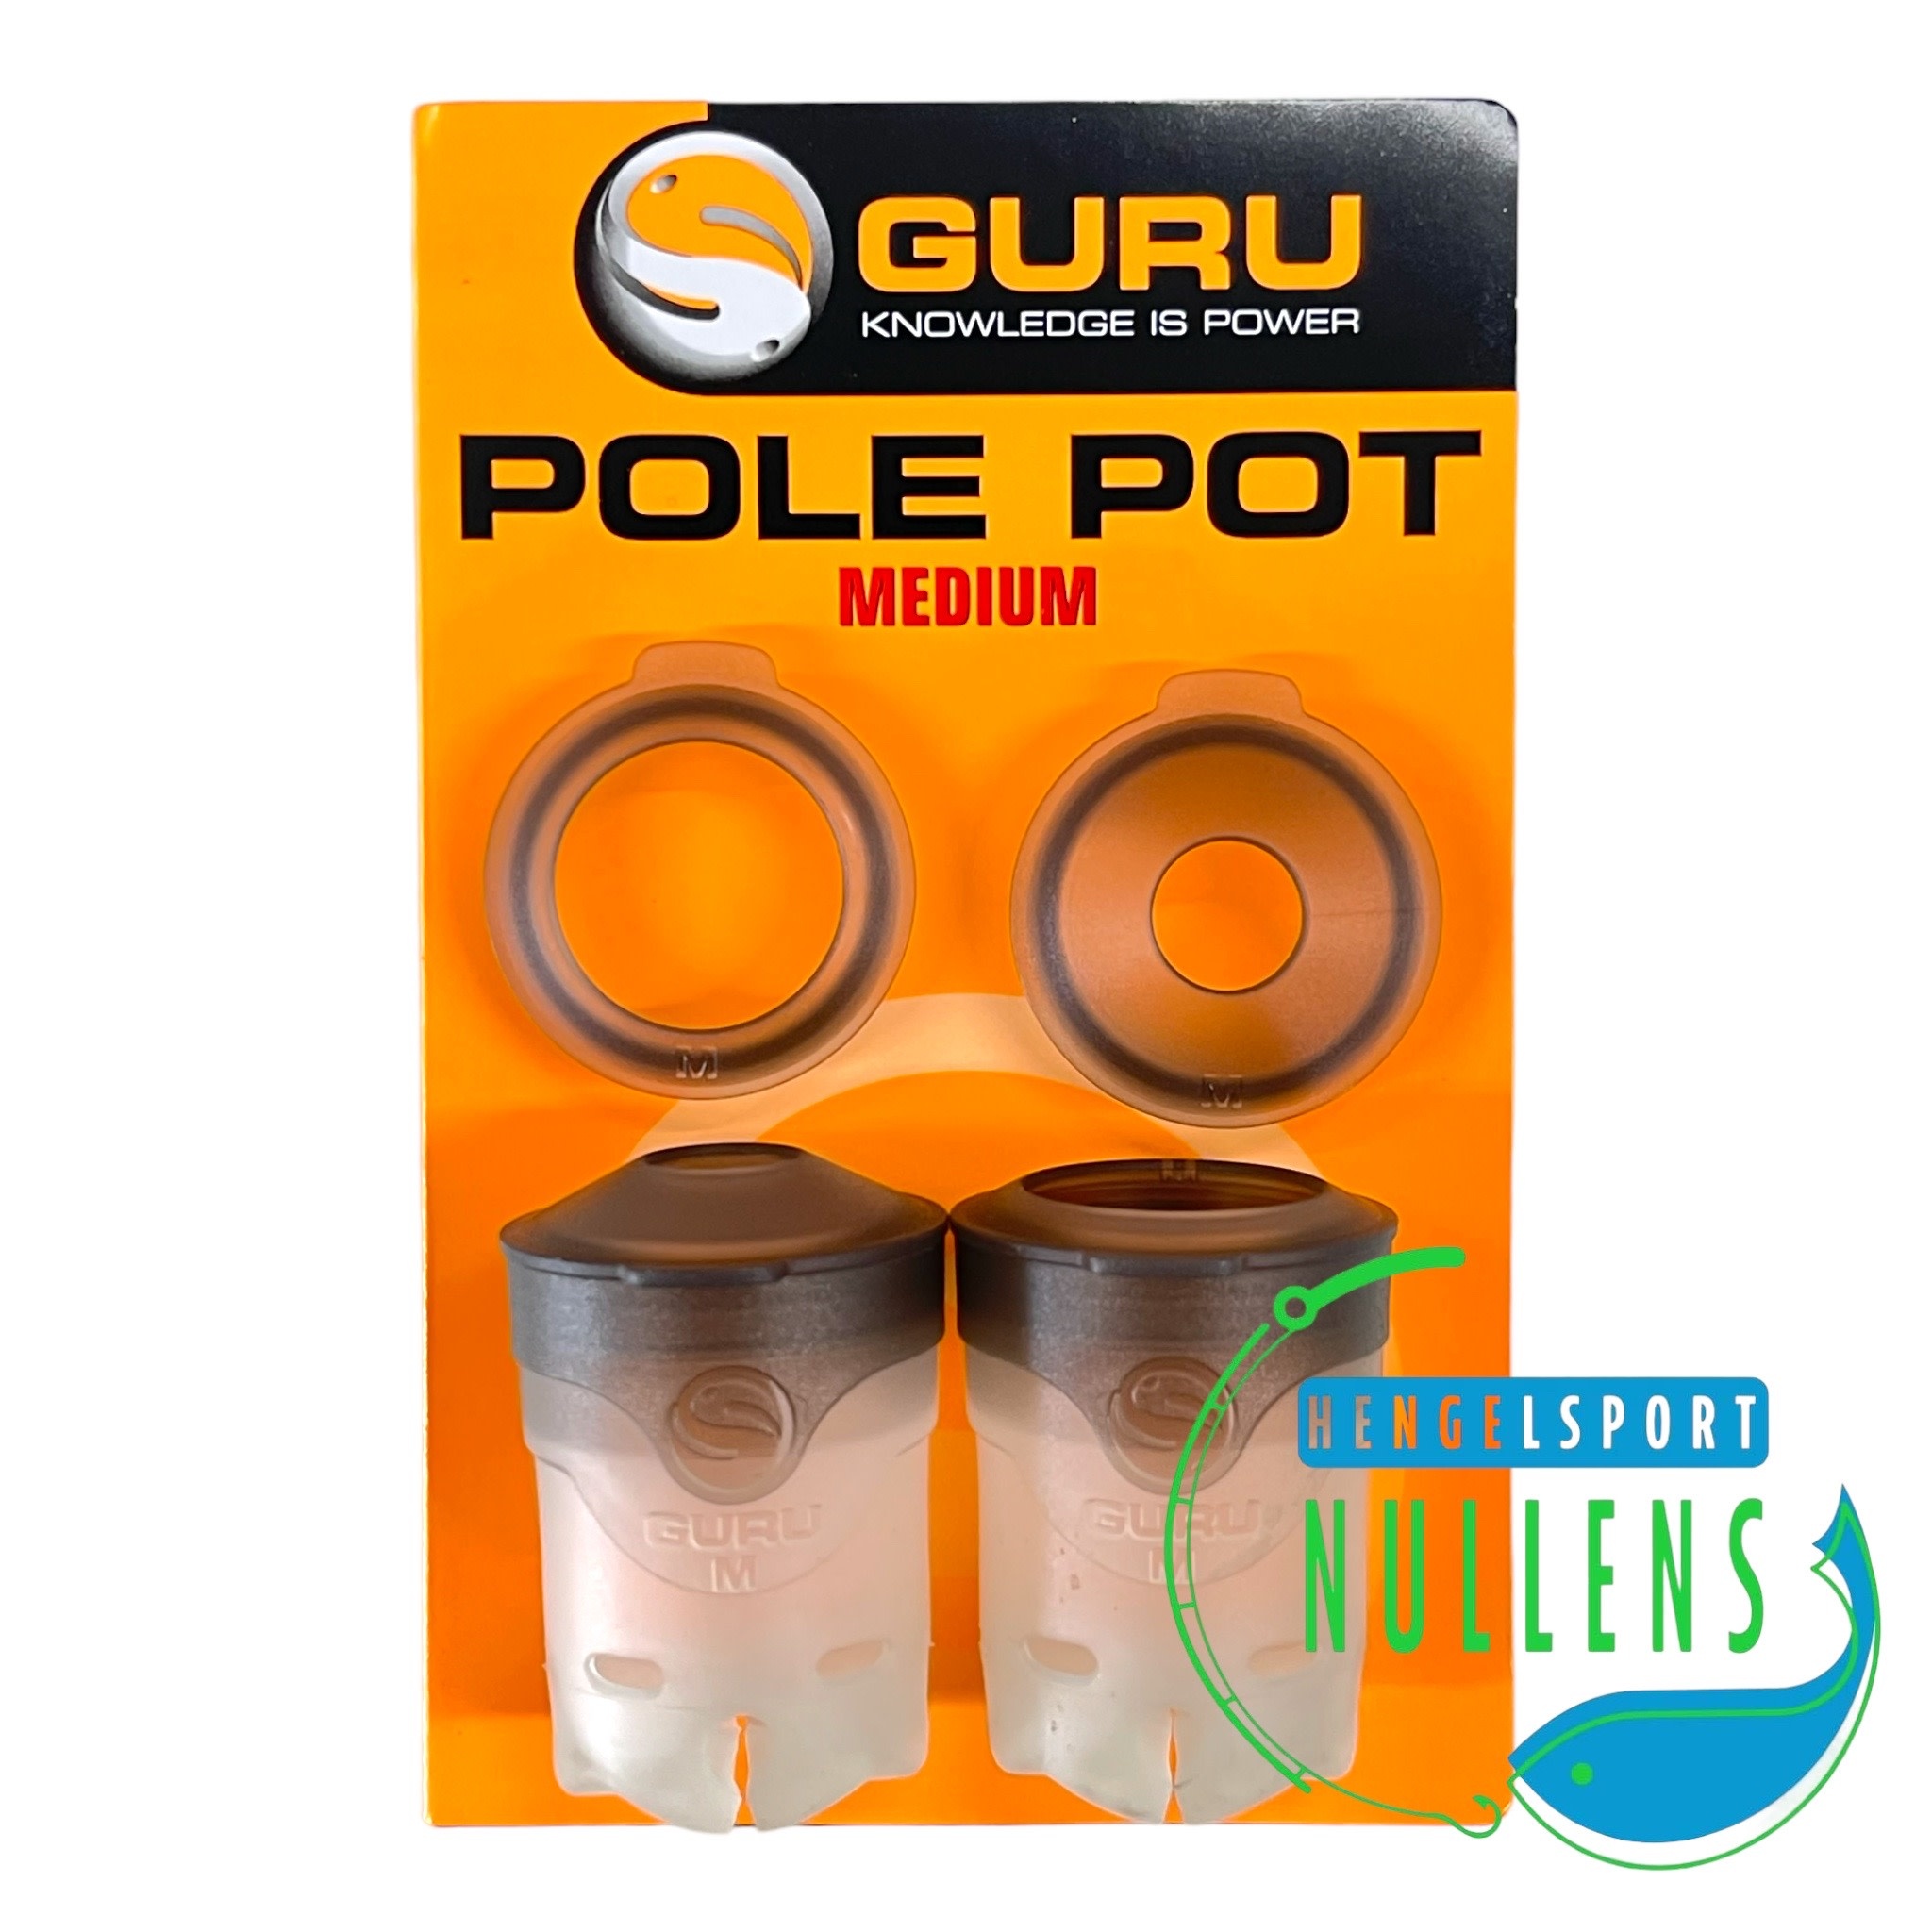 GURU Pole Pot